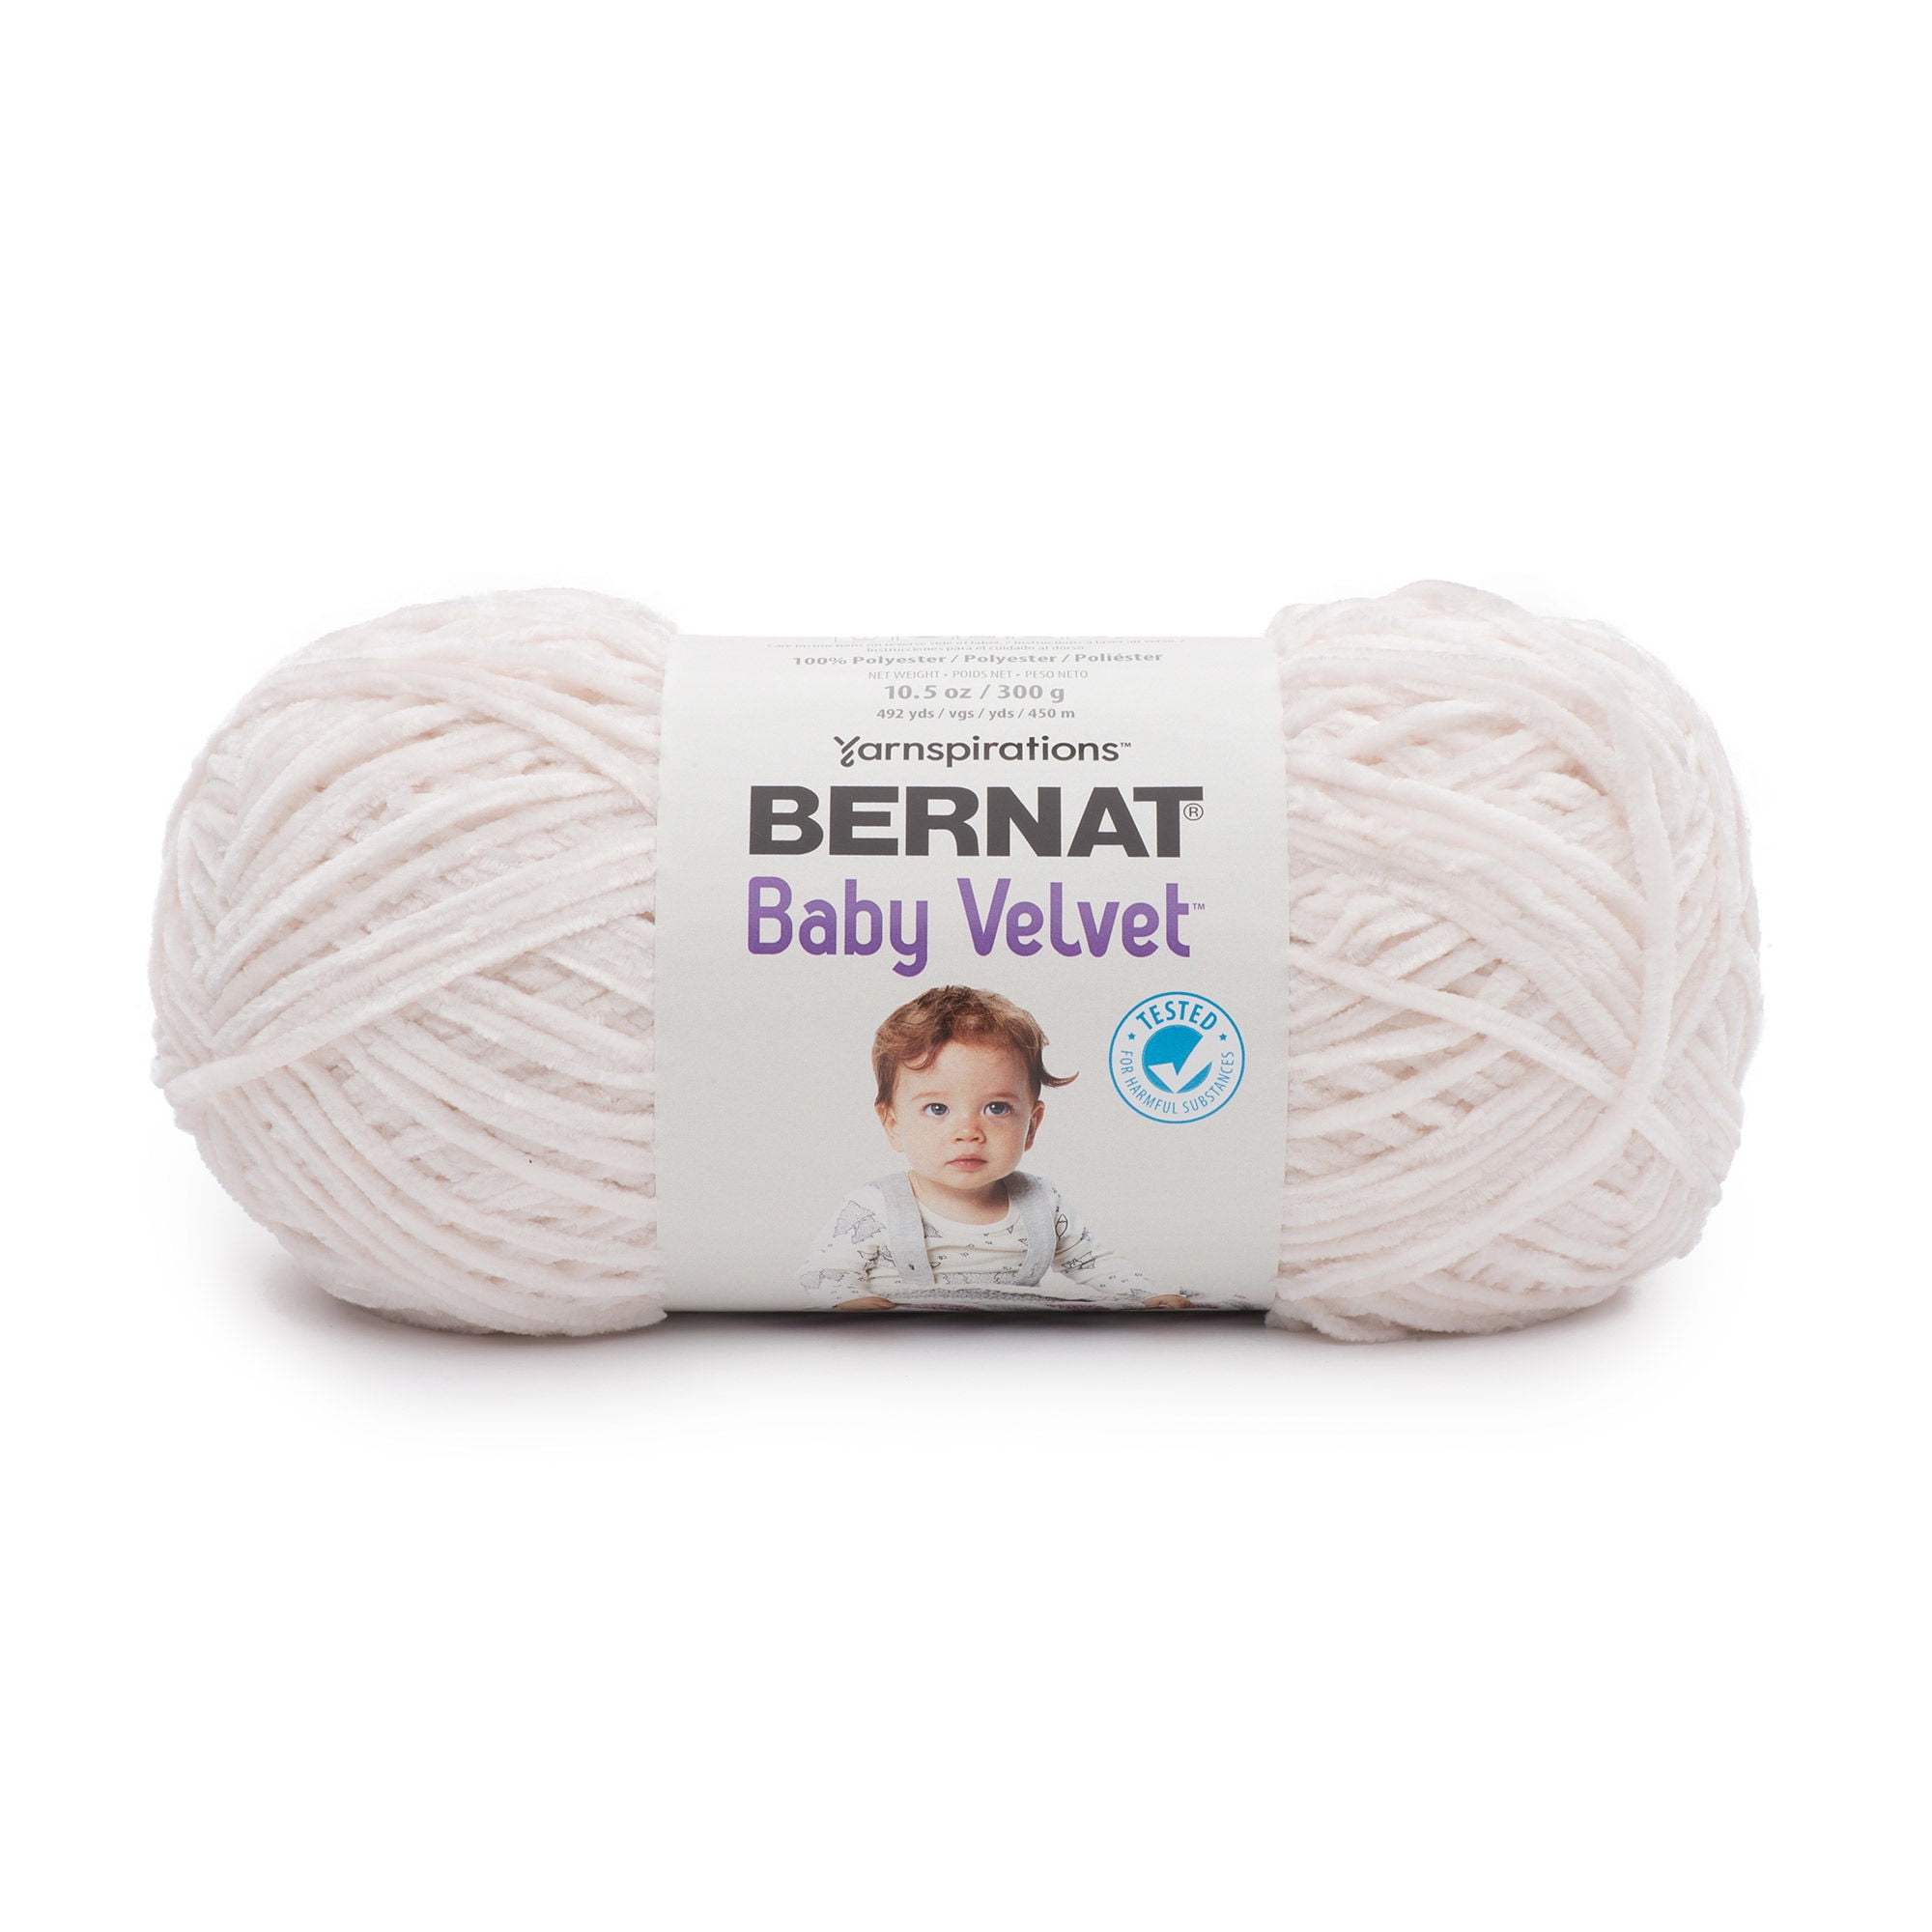 Spinrite Bernat Velvet Yarn-Terracotta Rose 